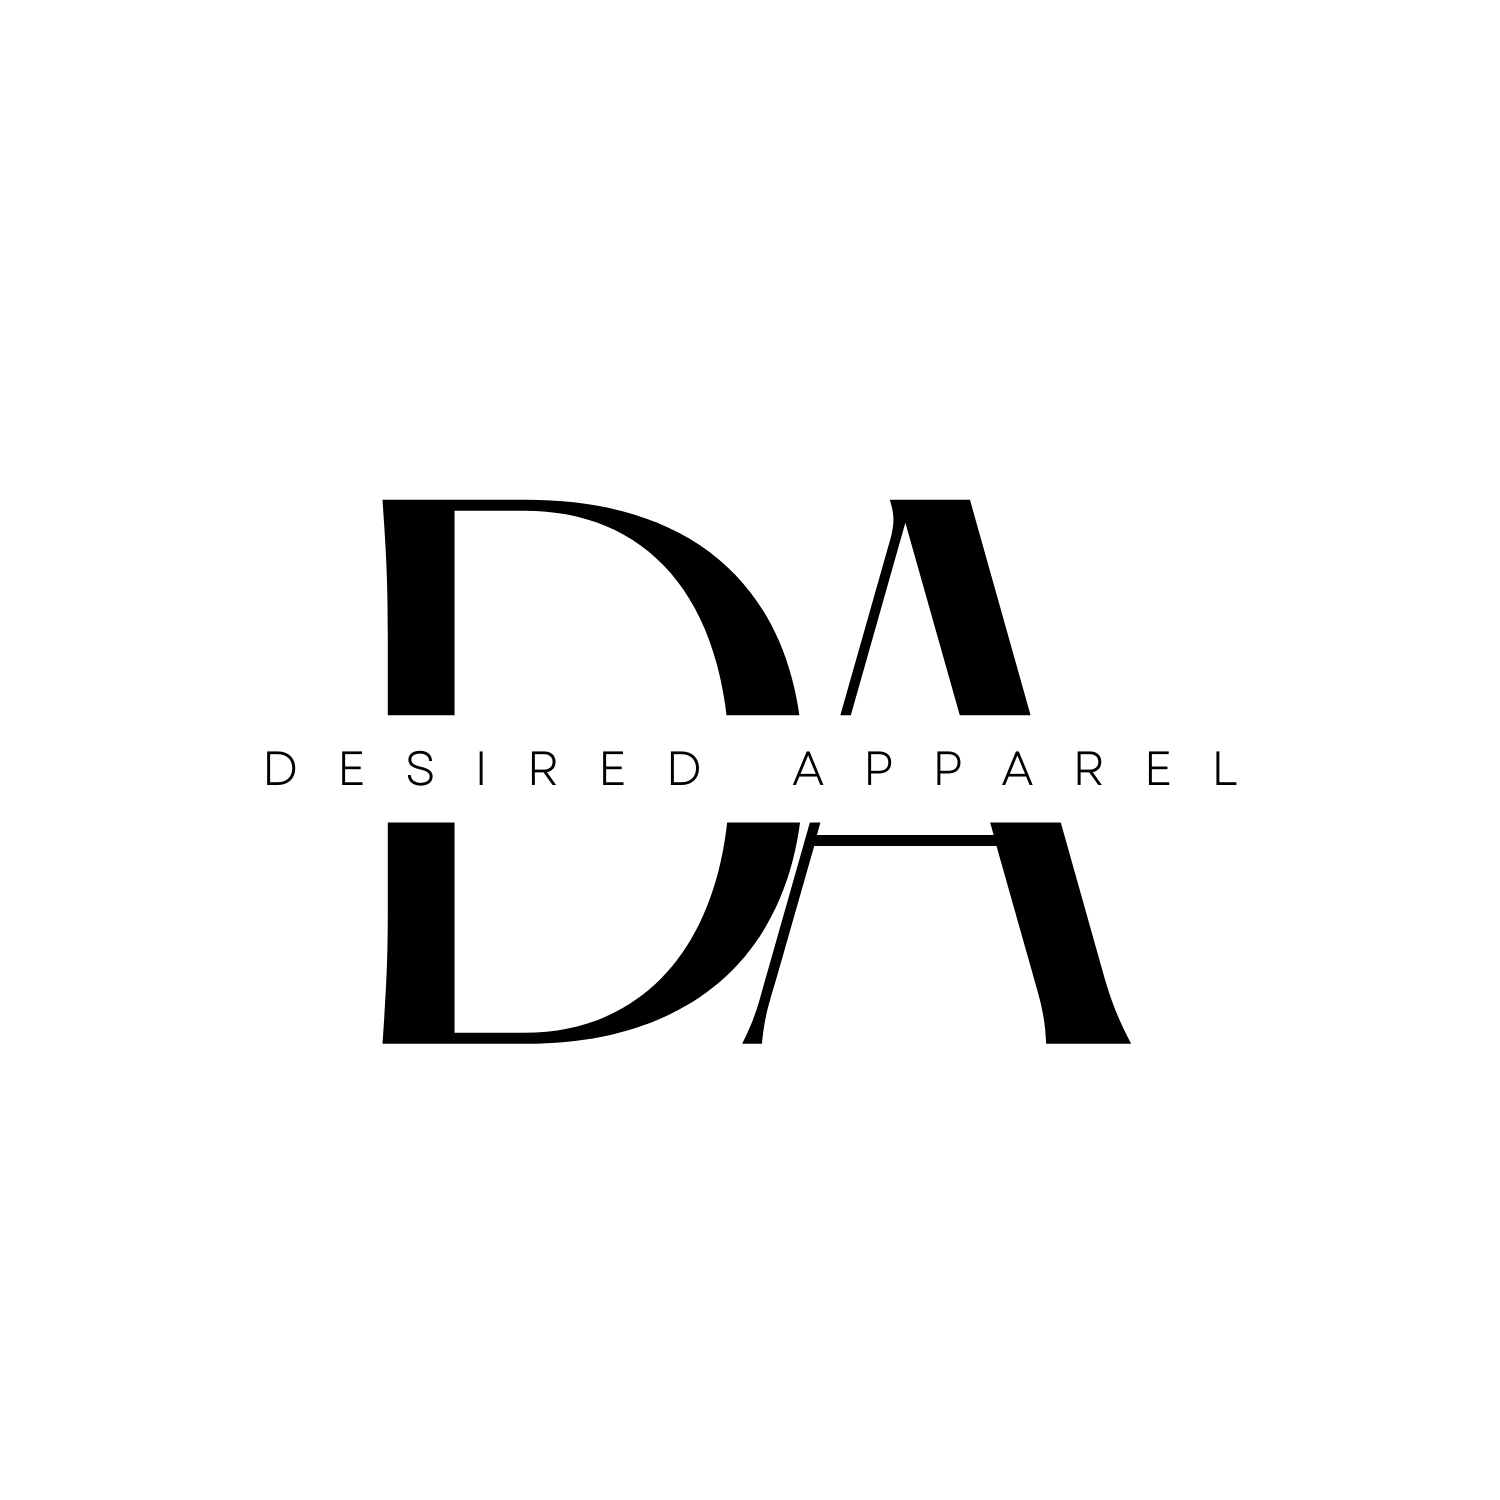 Desired_Apparel_Logo_0e53a338-75c5-4f53-8e06-f9f212d777c2.png